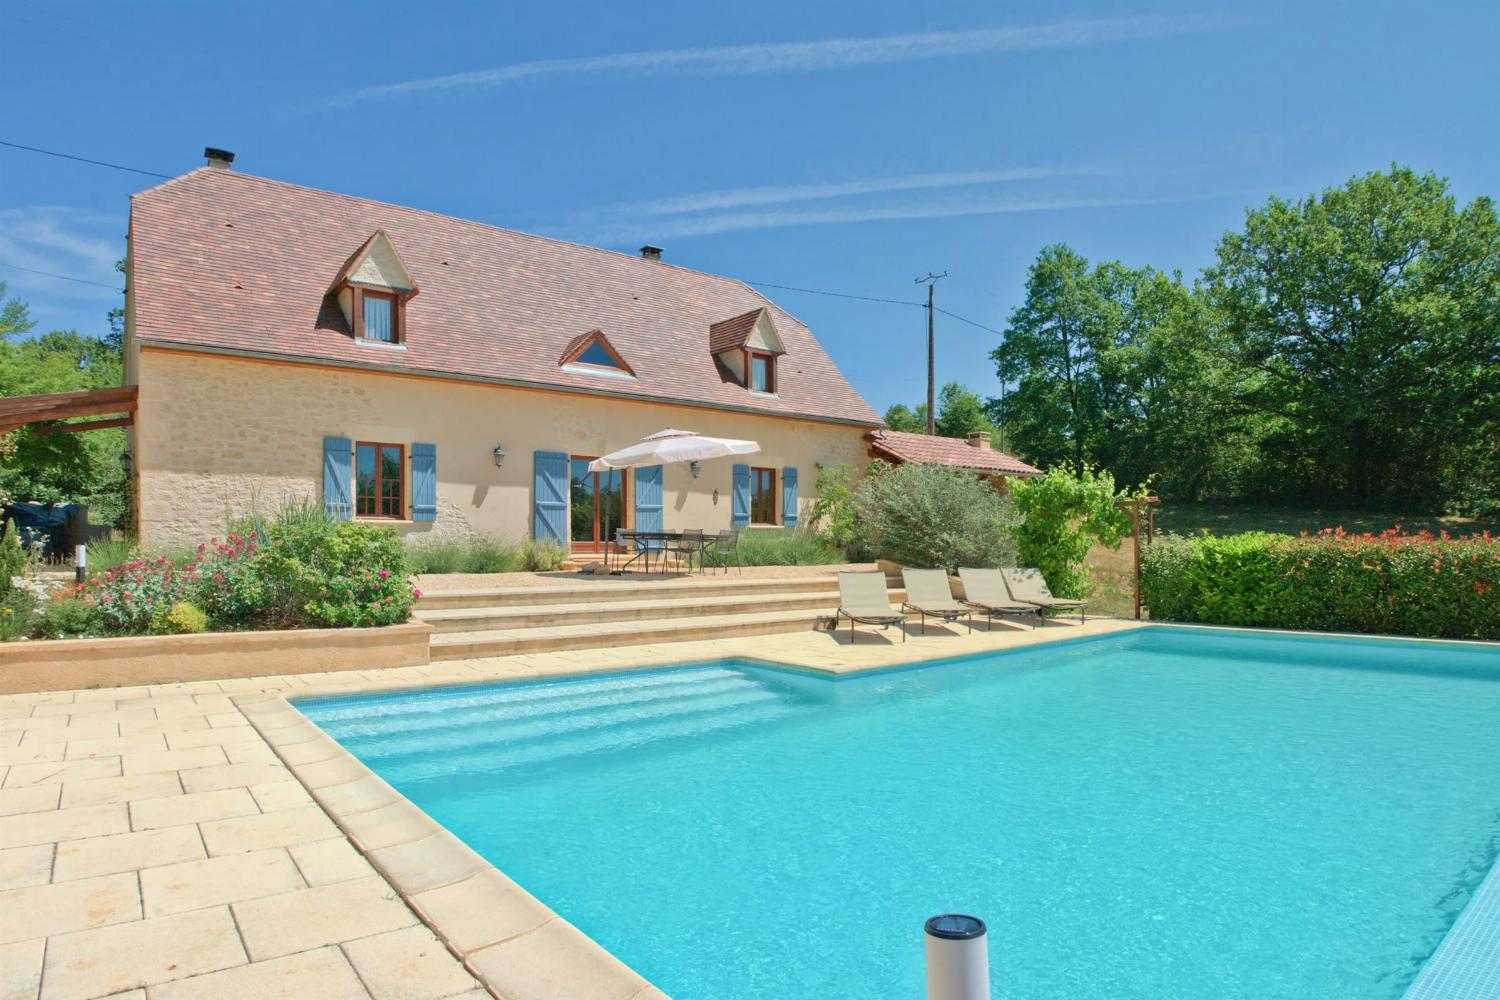 Location de vacances en Nouvelle-Aquitaine avec piscine privée chauffée